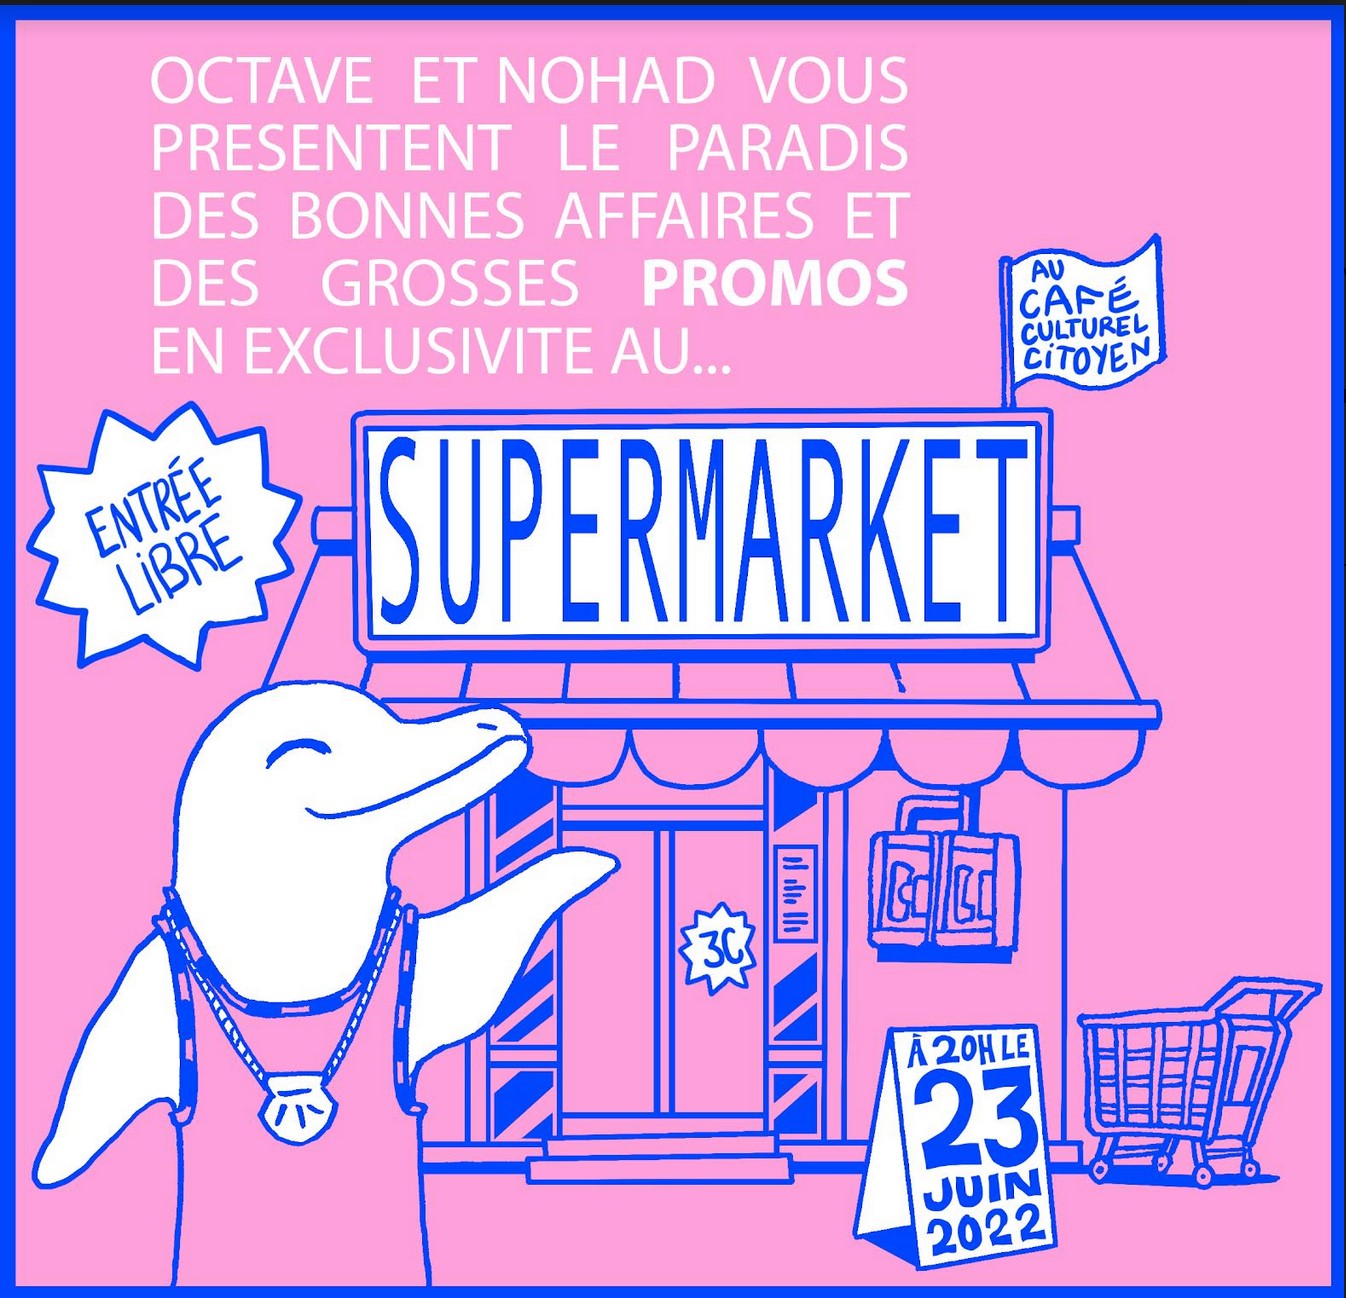 Théâtre - Octave Lai & Nohad Salem - Supermarket